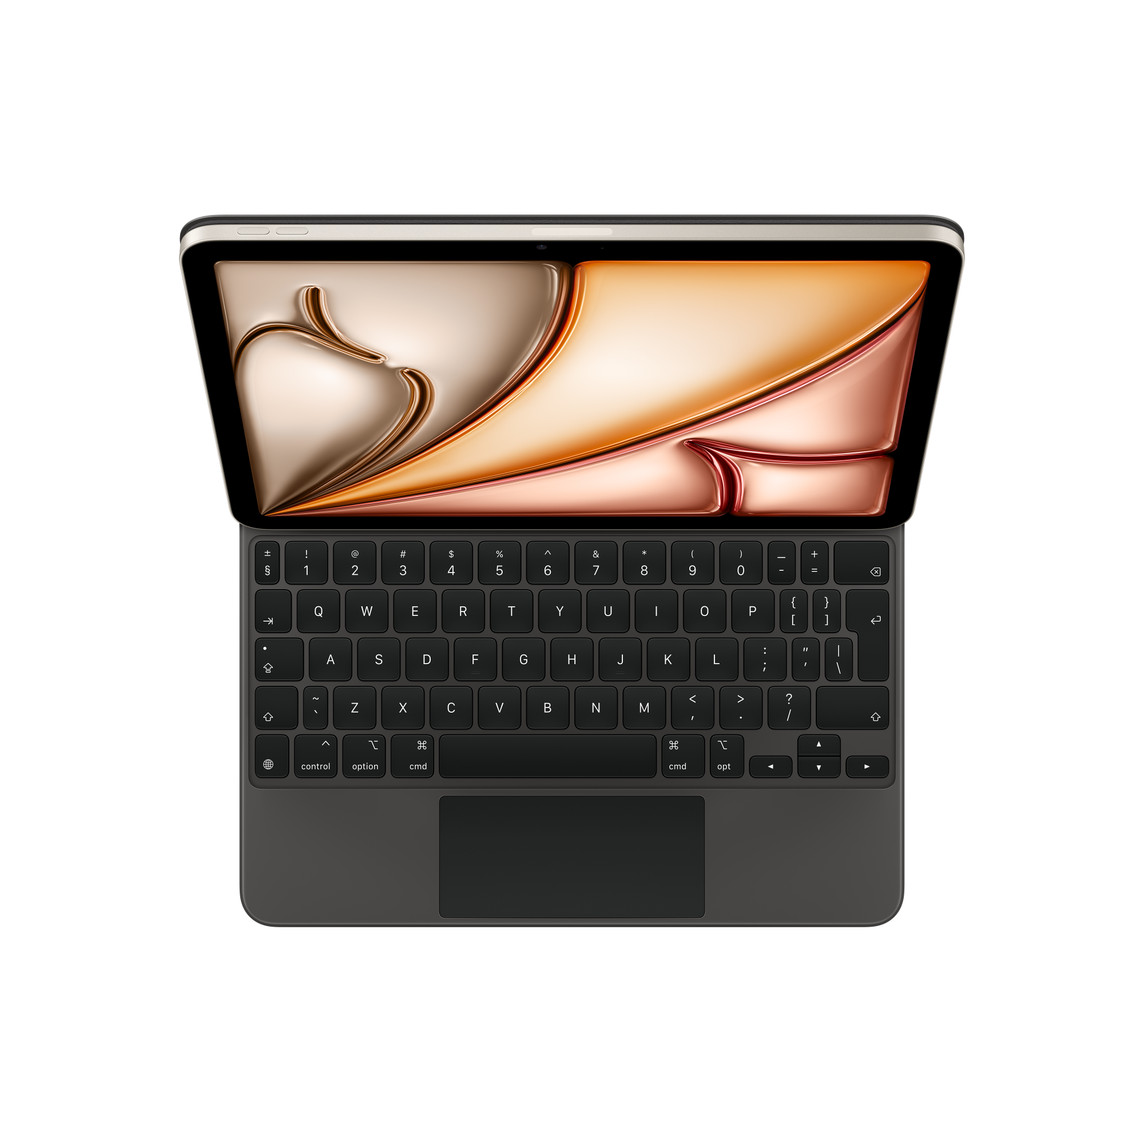 iPad Air podłączony do klawiatury Magic Keyboard w kolorze czarnym, czarne klawisze z białym tekstem, klawisze strzałek w układzie odwróconego „T”, wbudowany gładzik